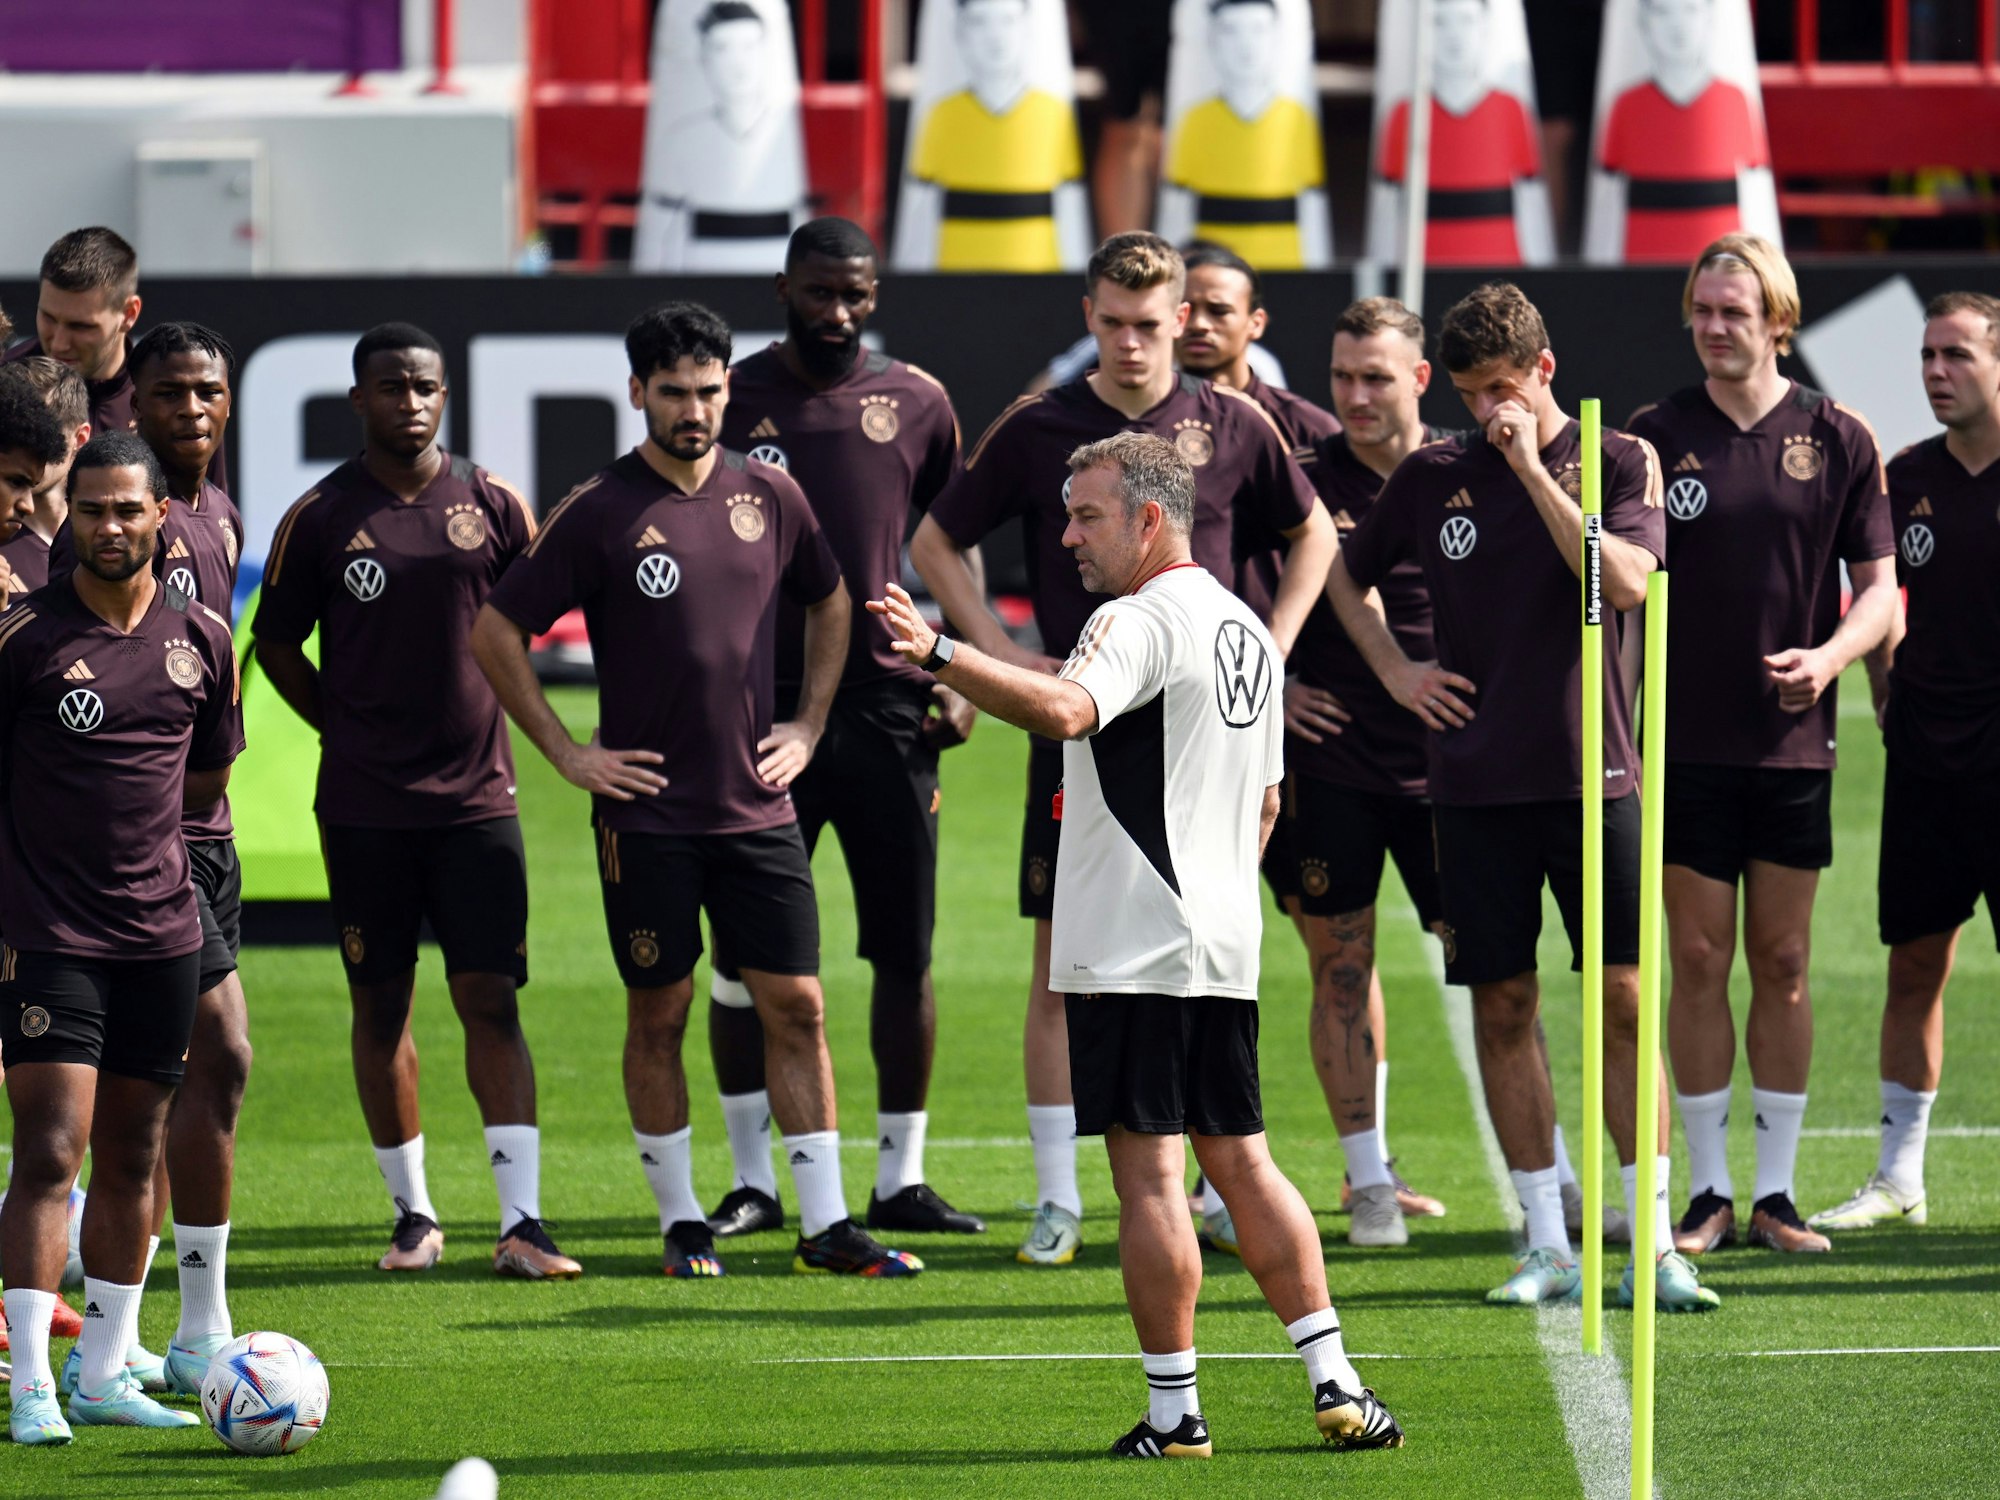 Vorbereitung auf die WM in Katar: Die deutsche Nationalmannschaft beim Training im Al-Shamal Stadion.